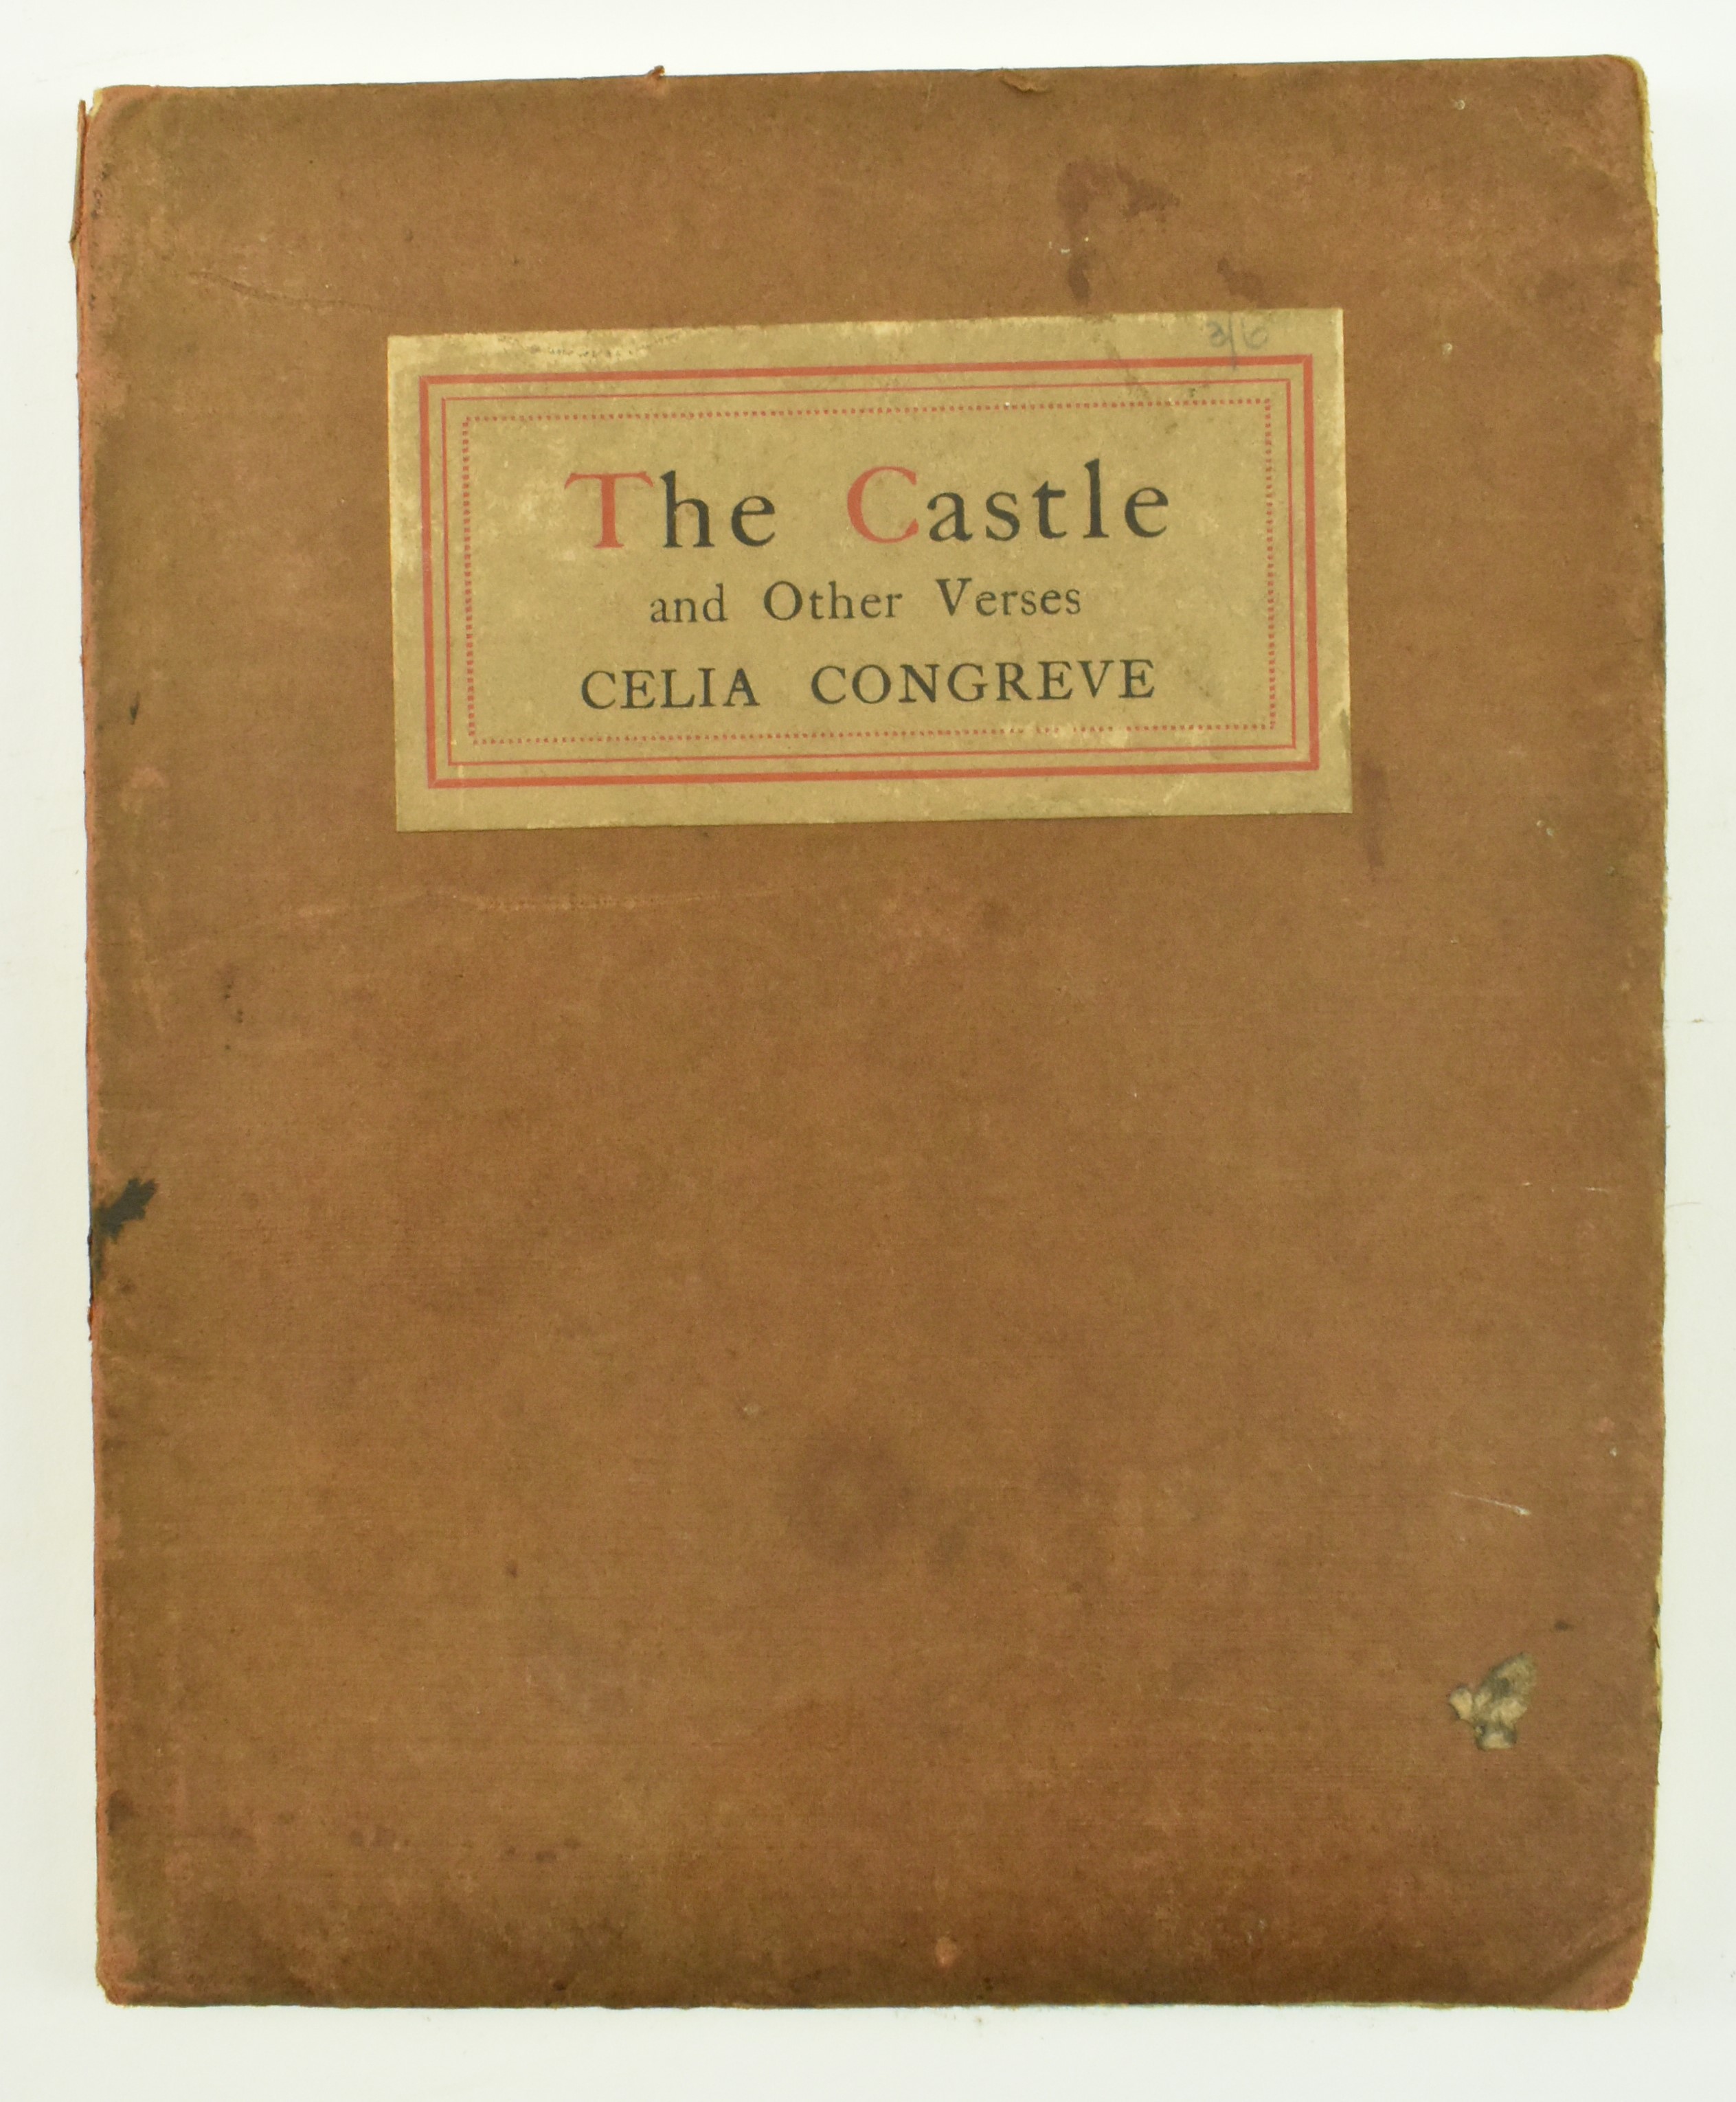 WWI INTEREST. CELIA CONGREVE PRESENTATION COPY OF THE CASTLE